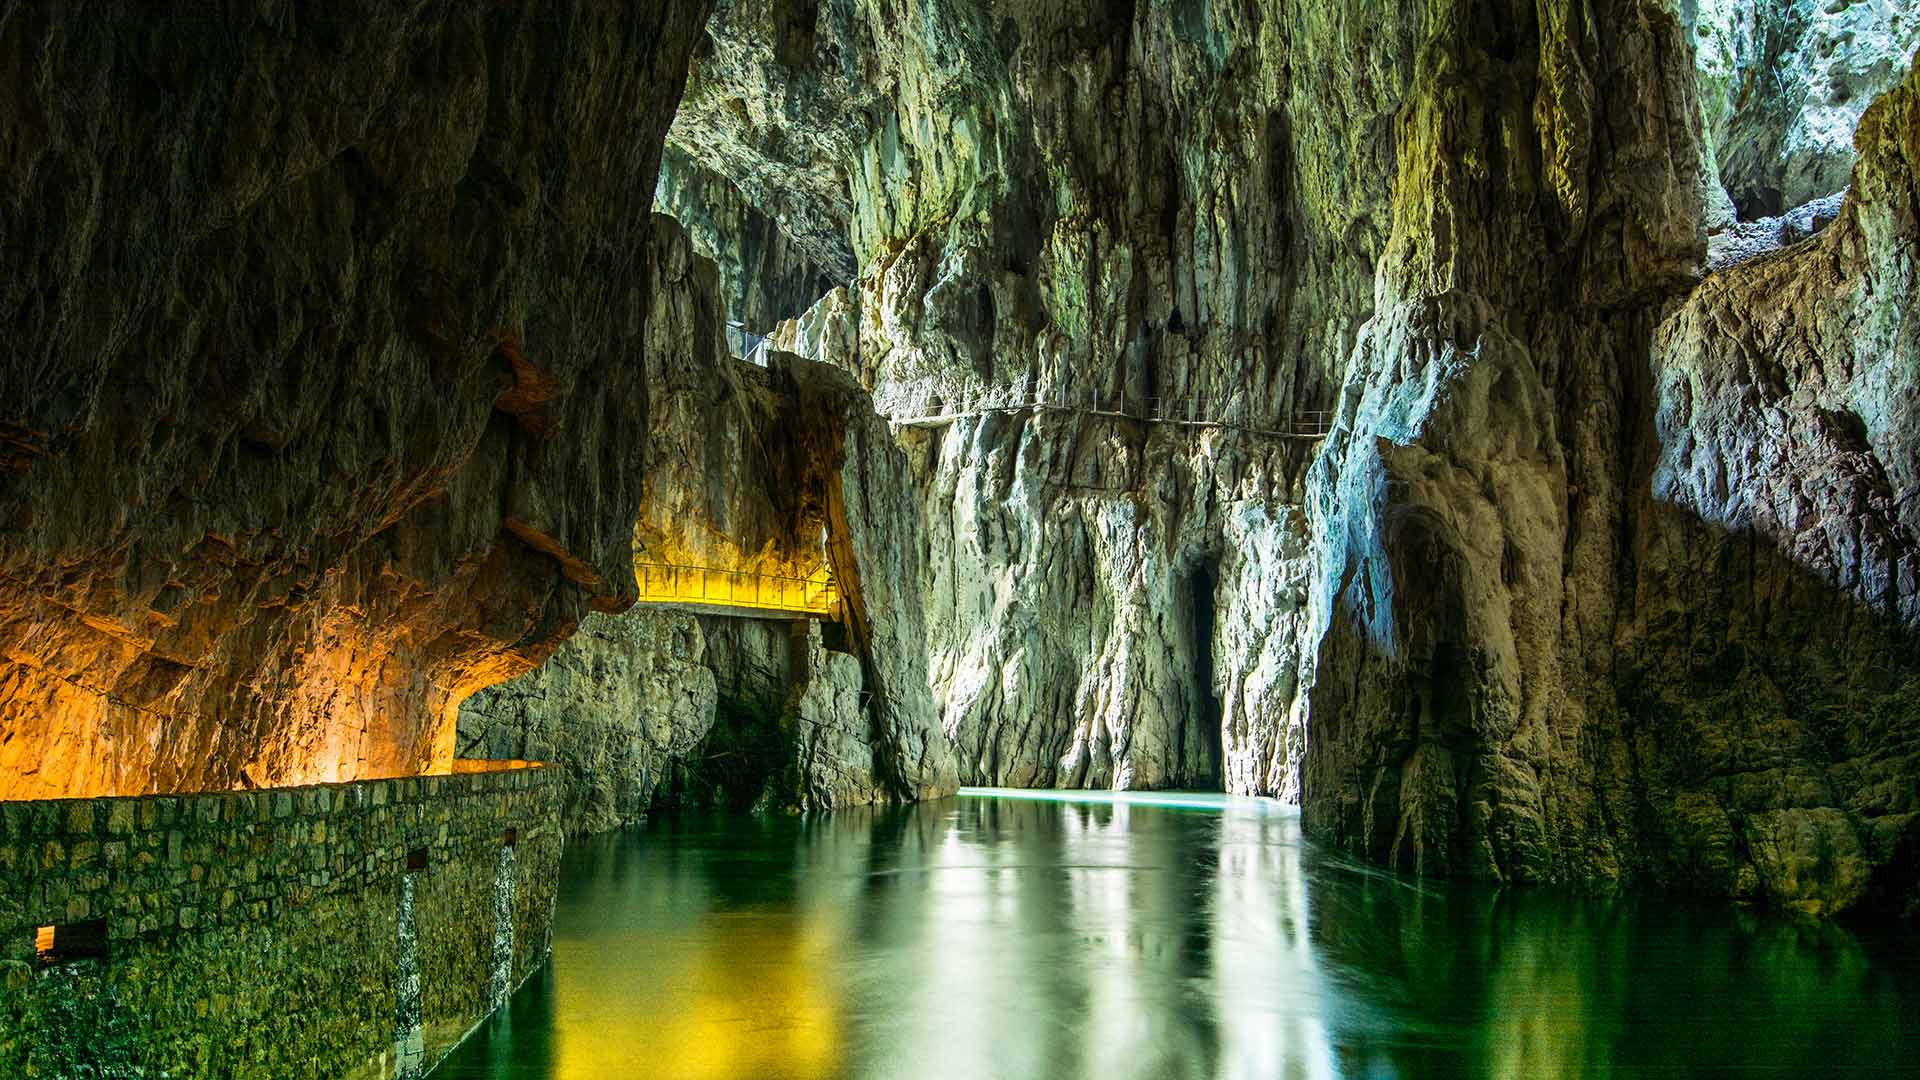 skocjan caves tour from ljubljana